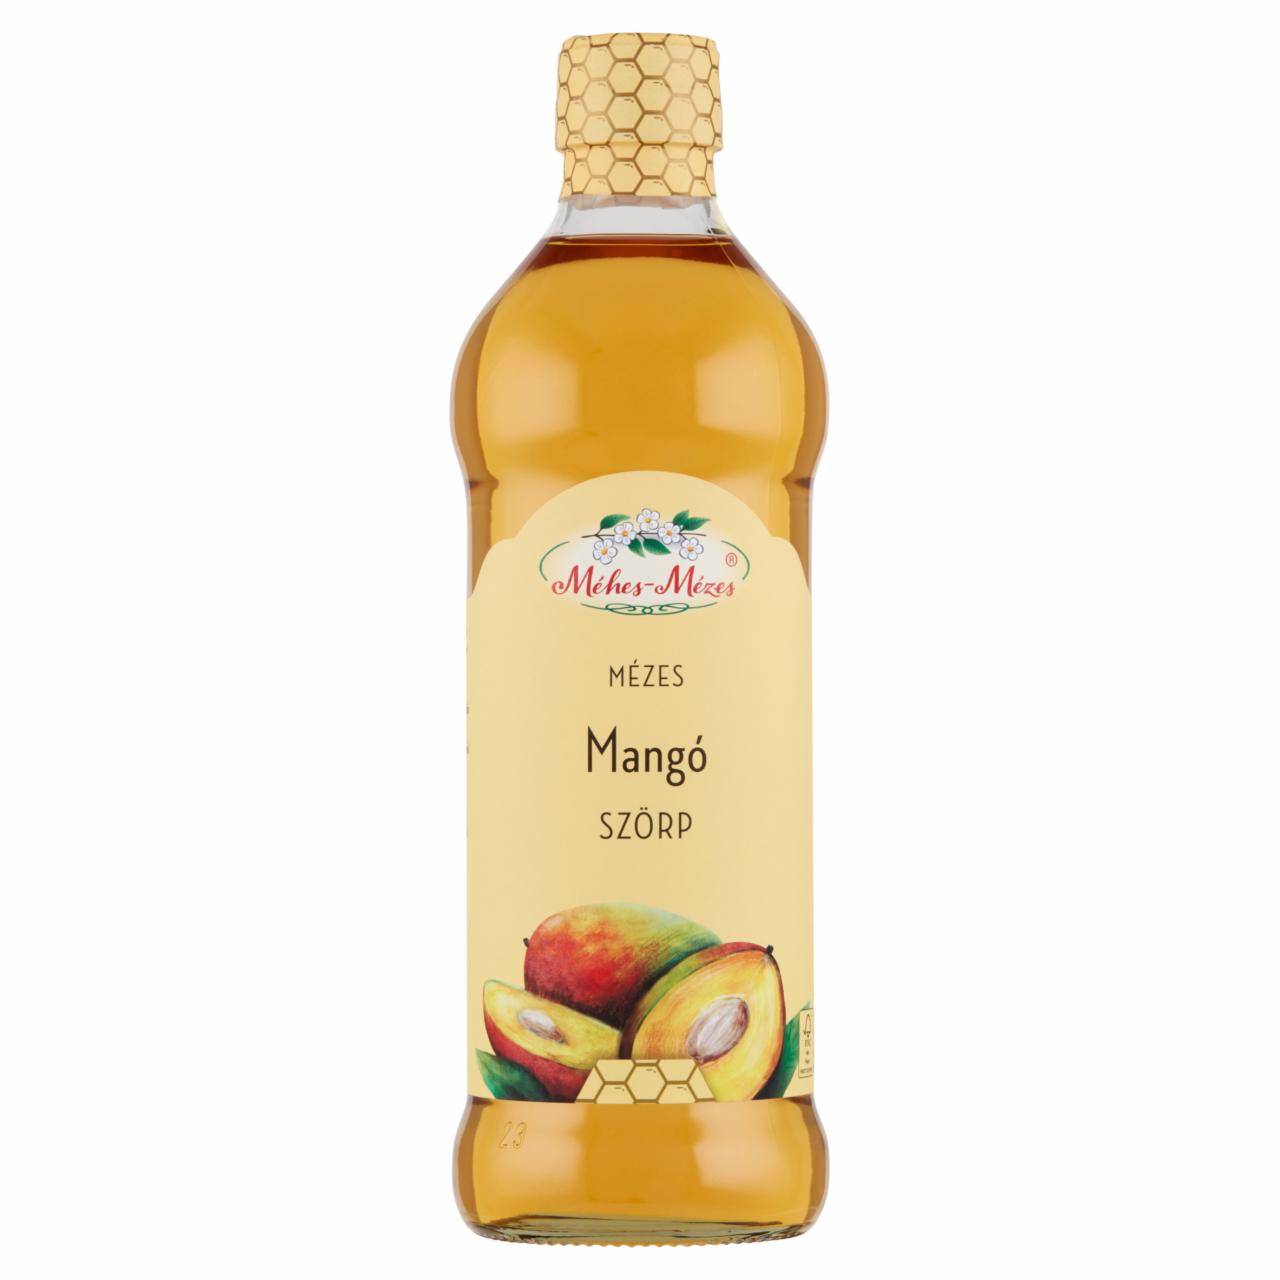 Képek - Méhes-Mézes mézes mangó szörp 500 ml